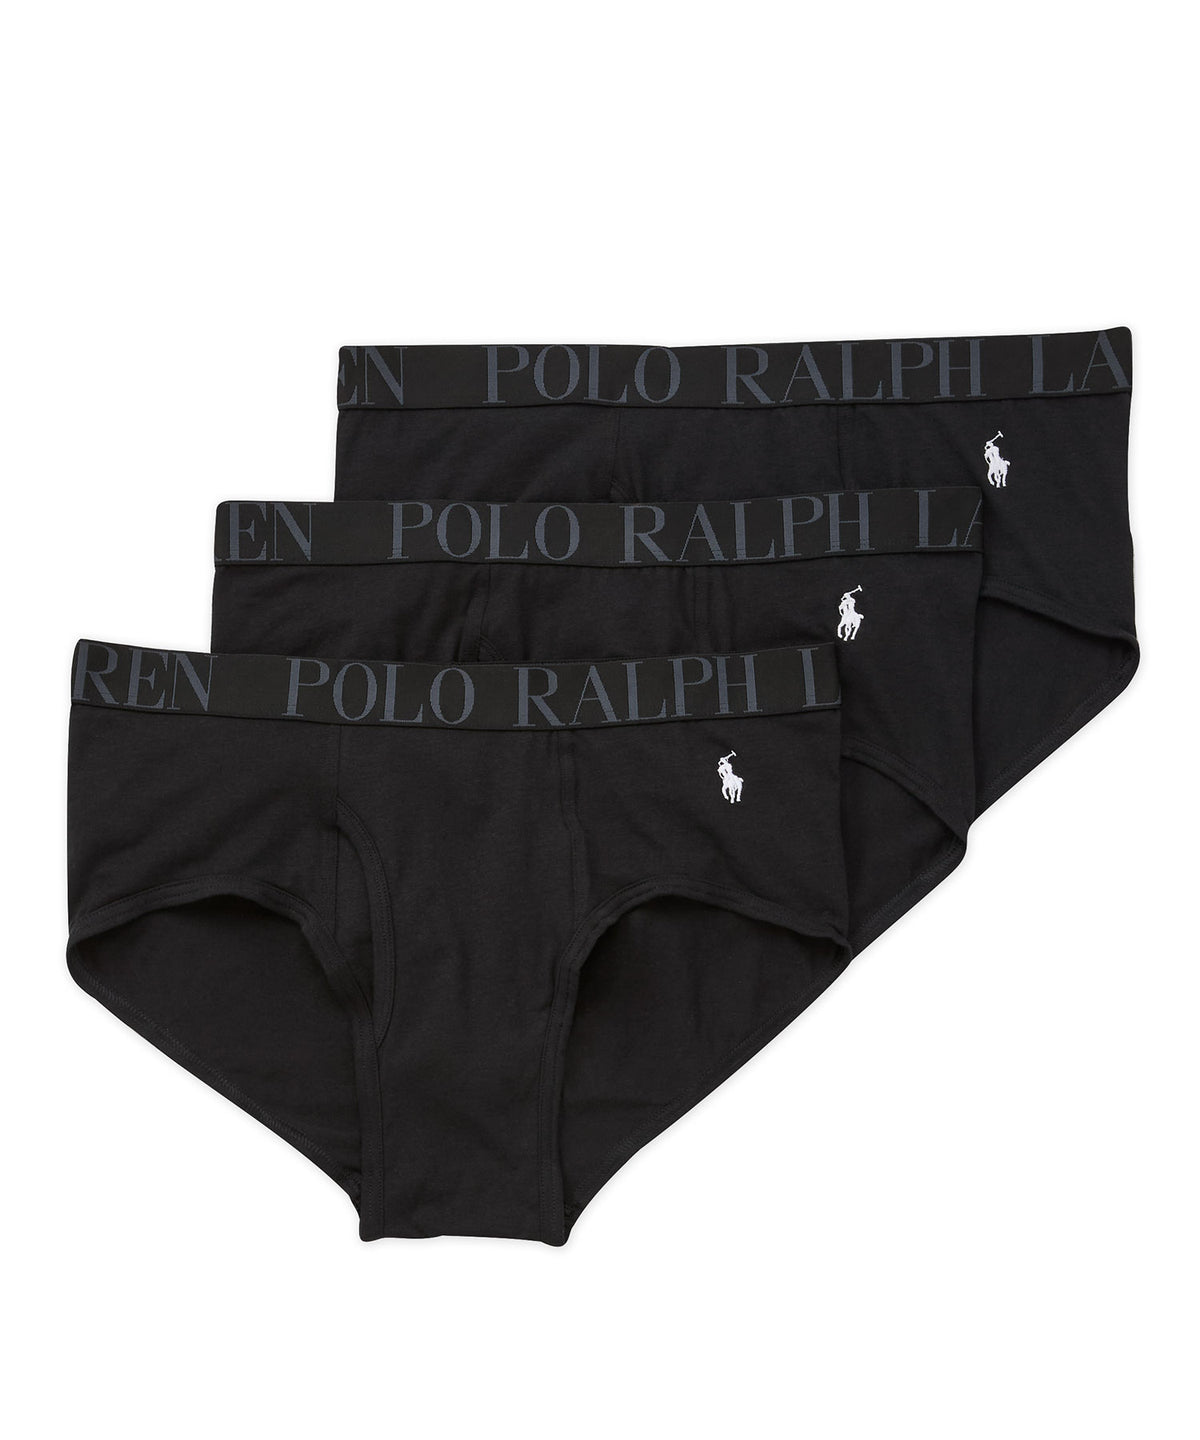 Polo Ralph Lauren Classic Briefs (3-Pack) - Westport Big & Tall